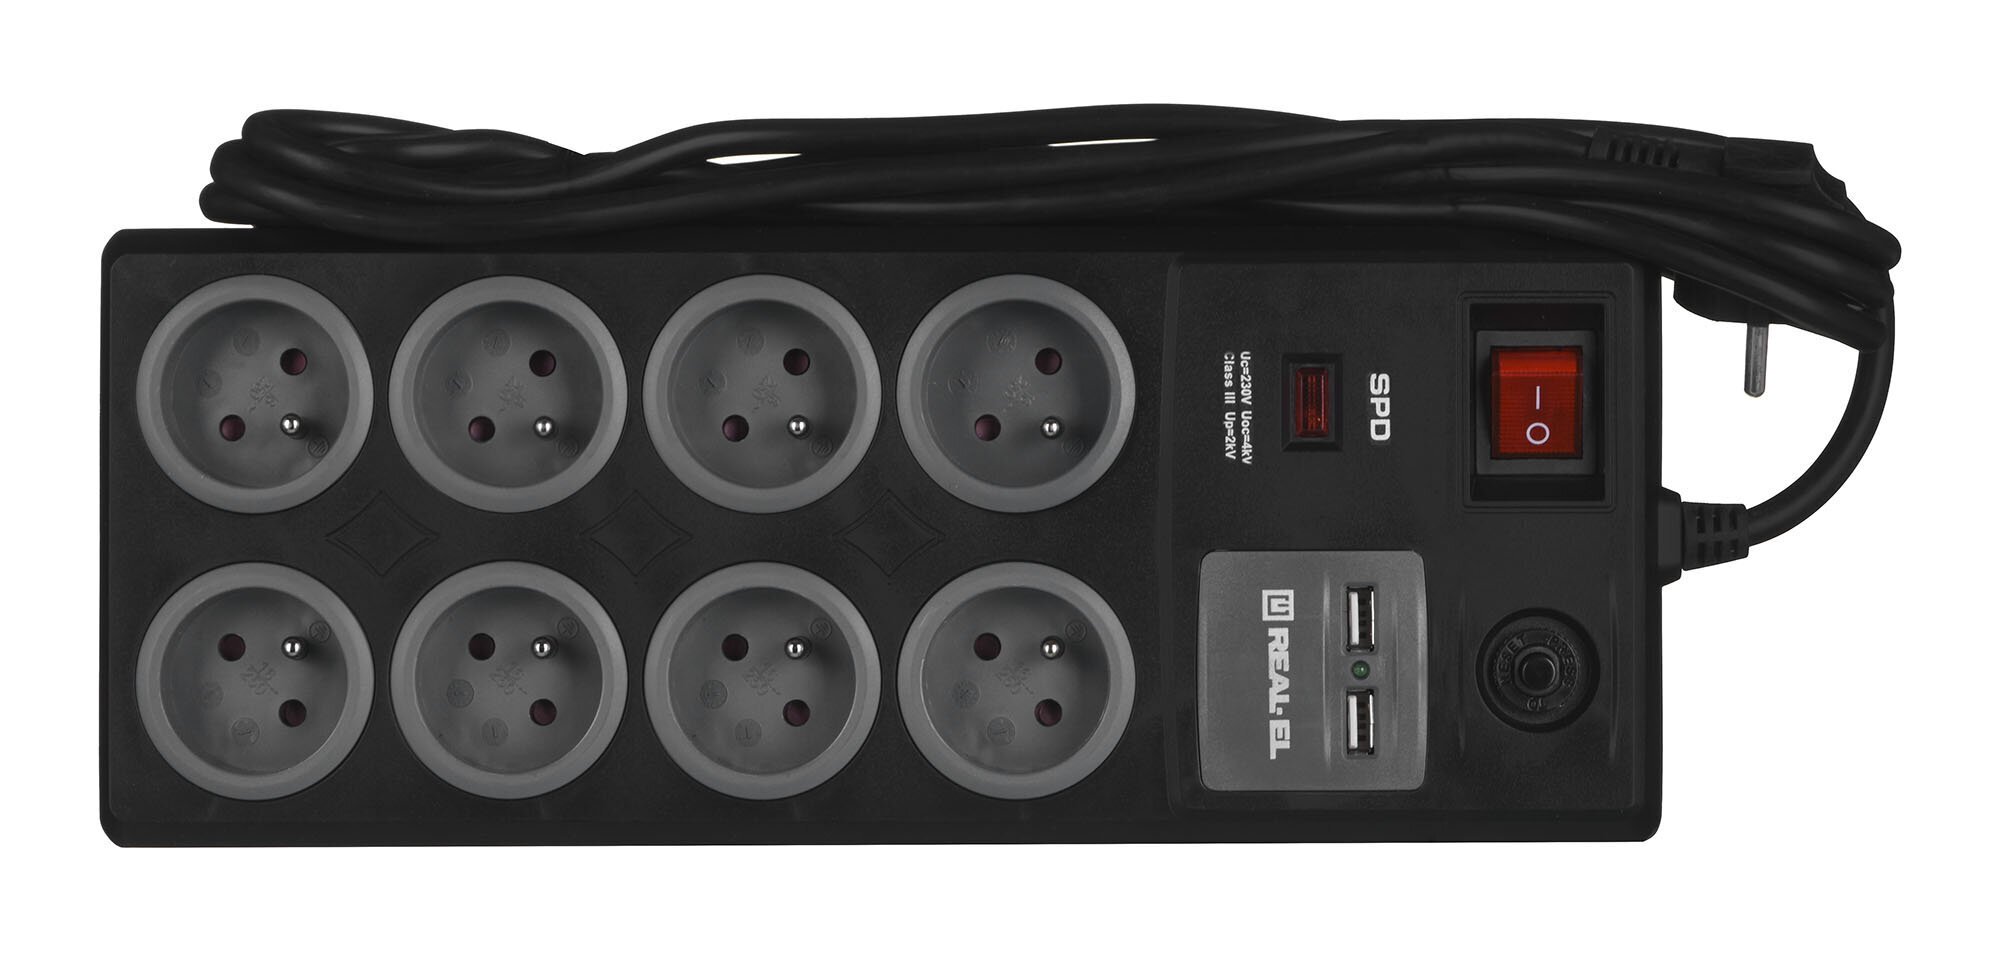 Real-EL FRS-8F USB įkrovimas Maitinimo laidas su apsauga nuo viršįtampių 2x USB 3 m Juodas kaina ir informacija | Prailgintuvai | pigu.lt